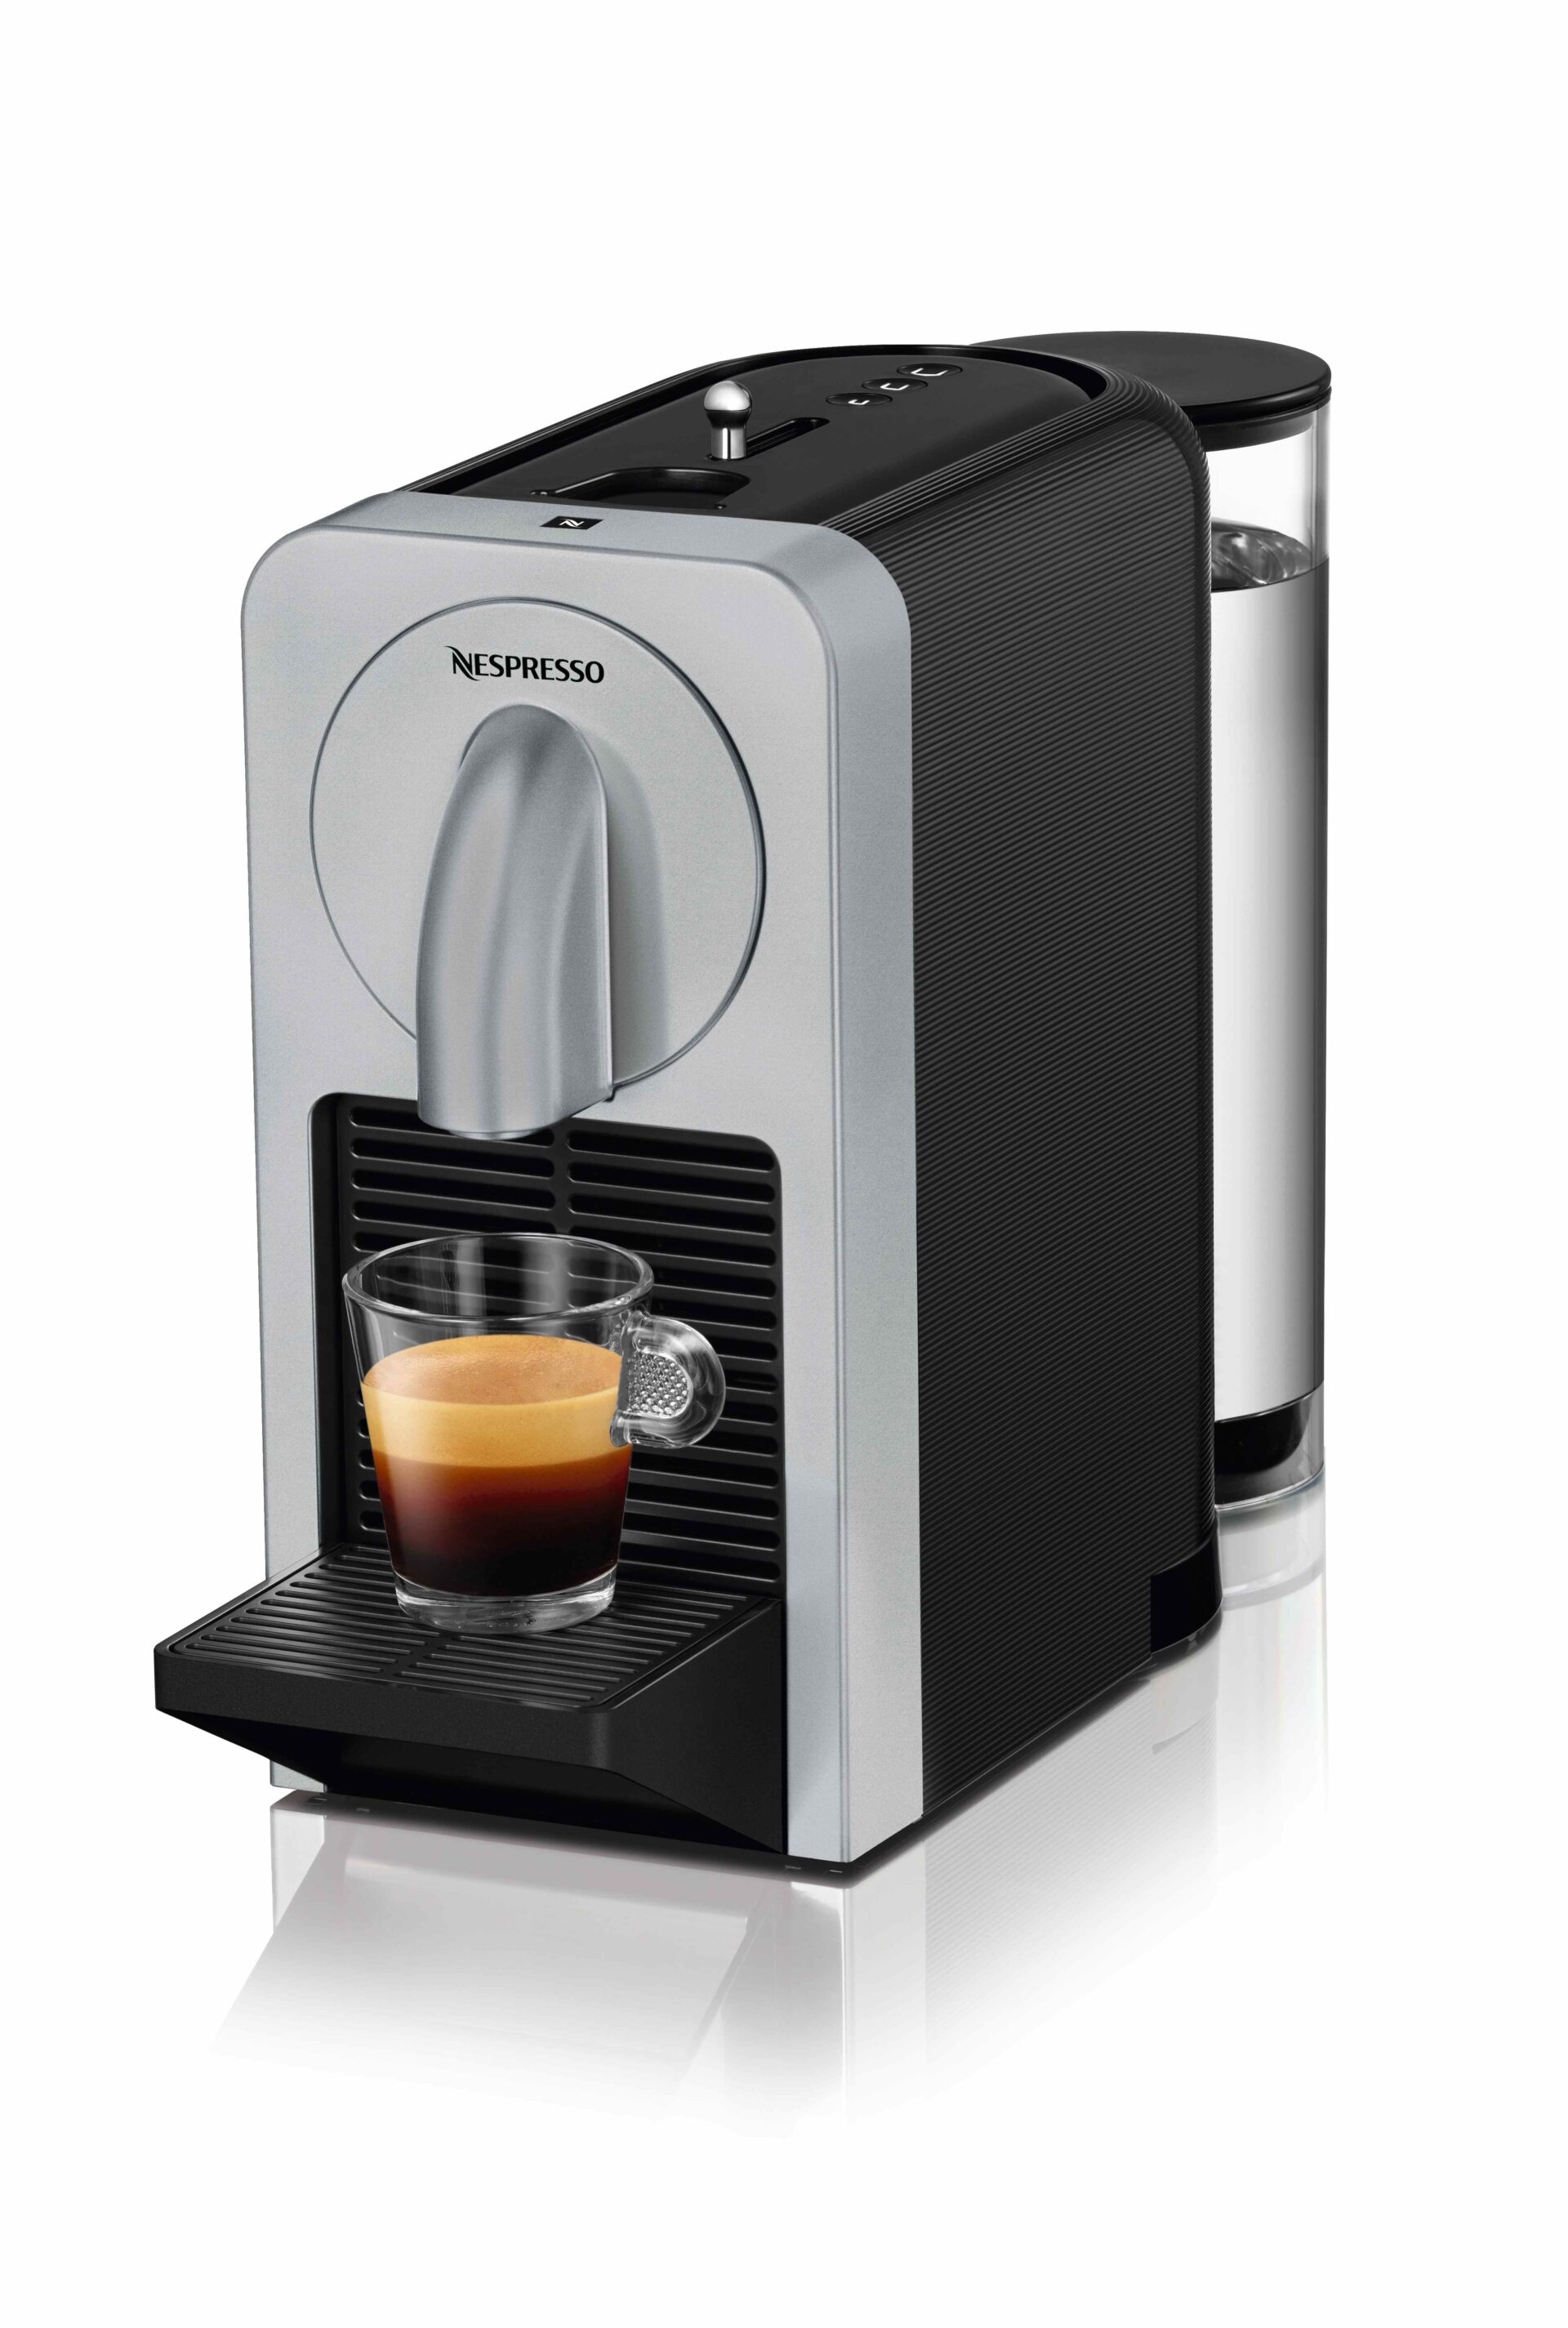 Prodigio la prima macchina per il caffè Nespresso gestita da una App